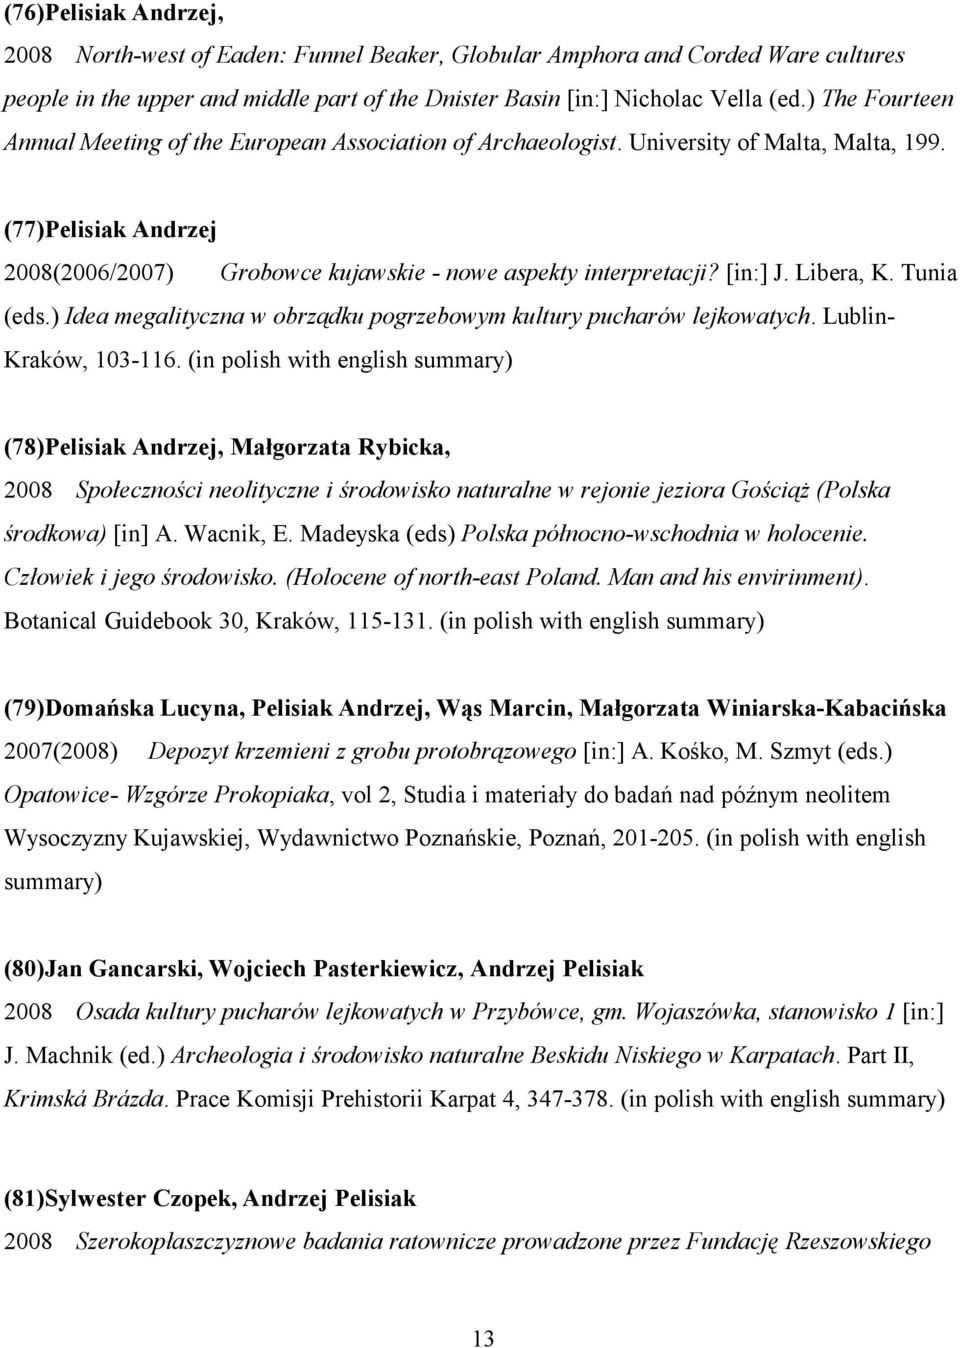 [in:] J. Libera, K. Tunia (eds.) Idea megalityczna w obrządku pogrzebowym kultury pucharów lejkowatych. Lublin- Kraków, 103-116.